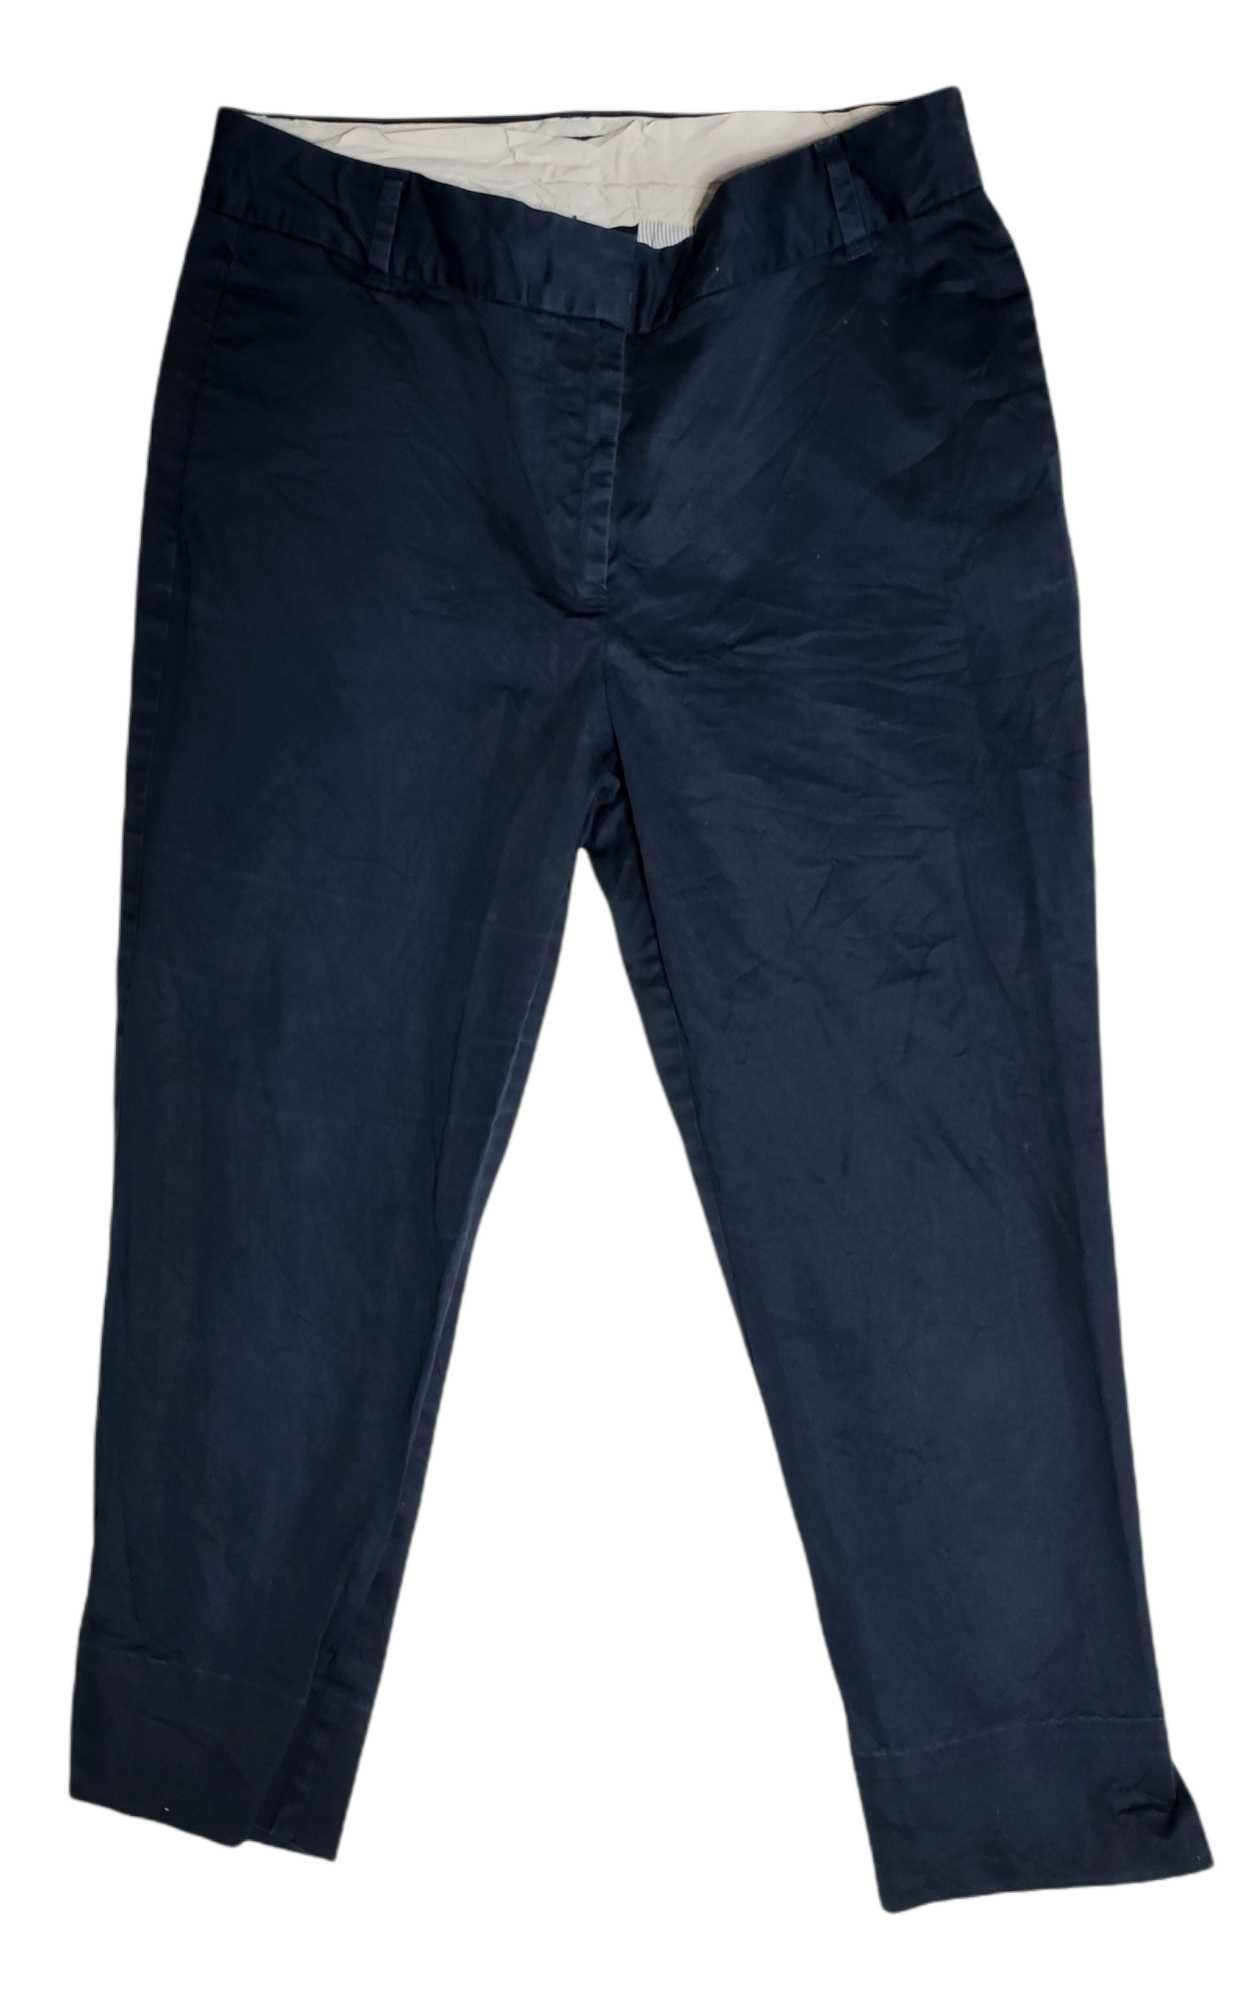 spodnie chinosy marki Tommy Hilfiger, rozmiar 6, stan bardzo dobry